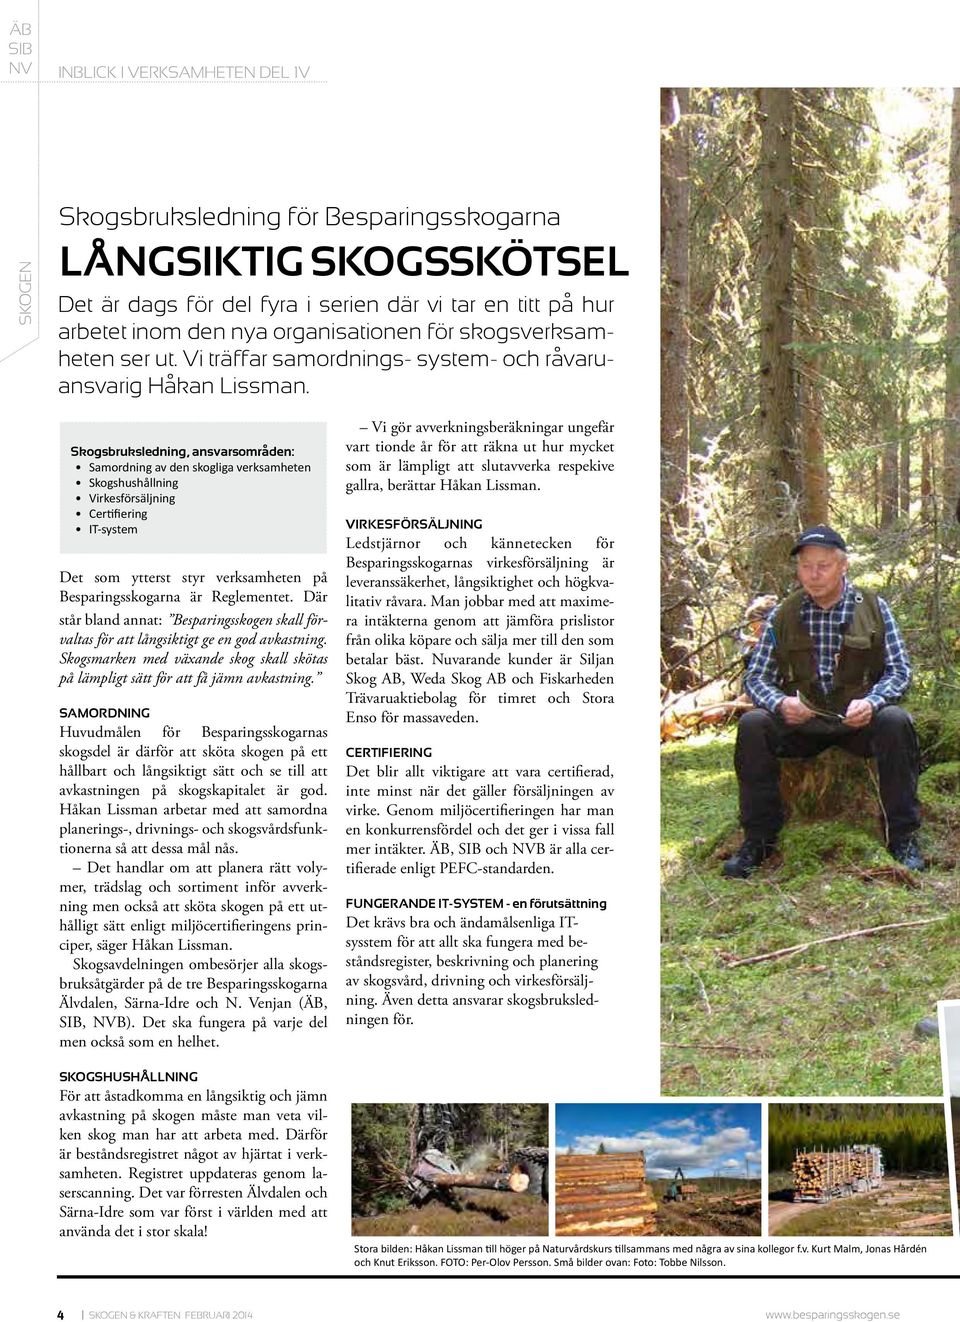 Skogsbruksledning, ansvarsområden: Samordning av den skogliga verksamheten Skogshushållning Virkesförsäljning Certifiering IT-system Det som ytterst styr verksamheten på Besparingsskogarna är